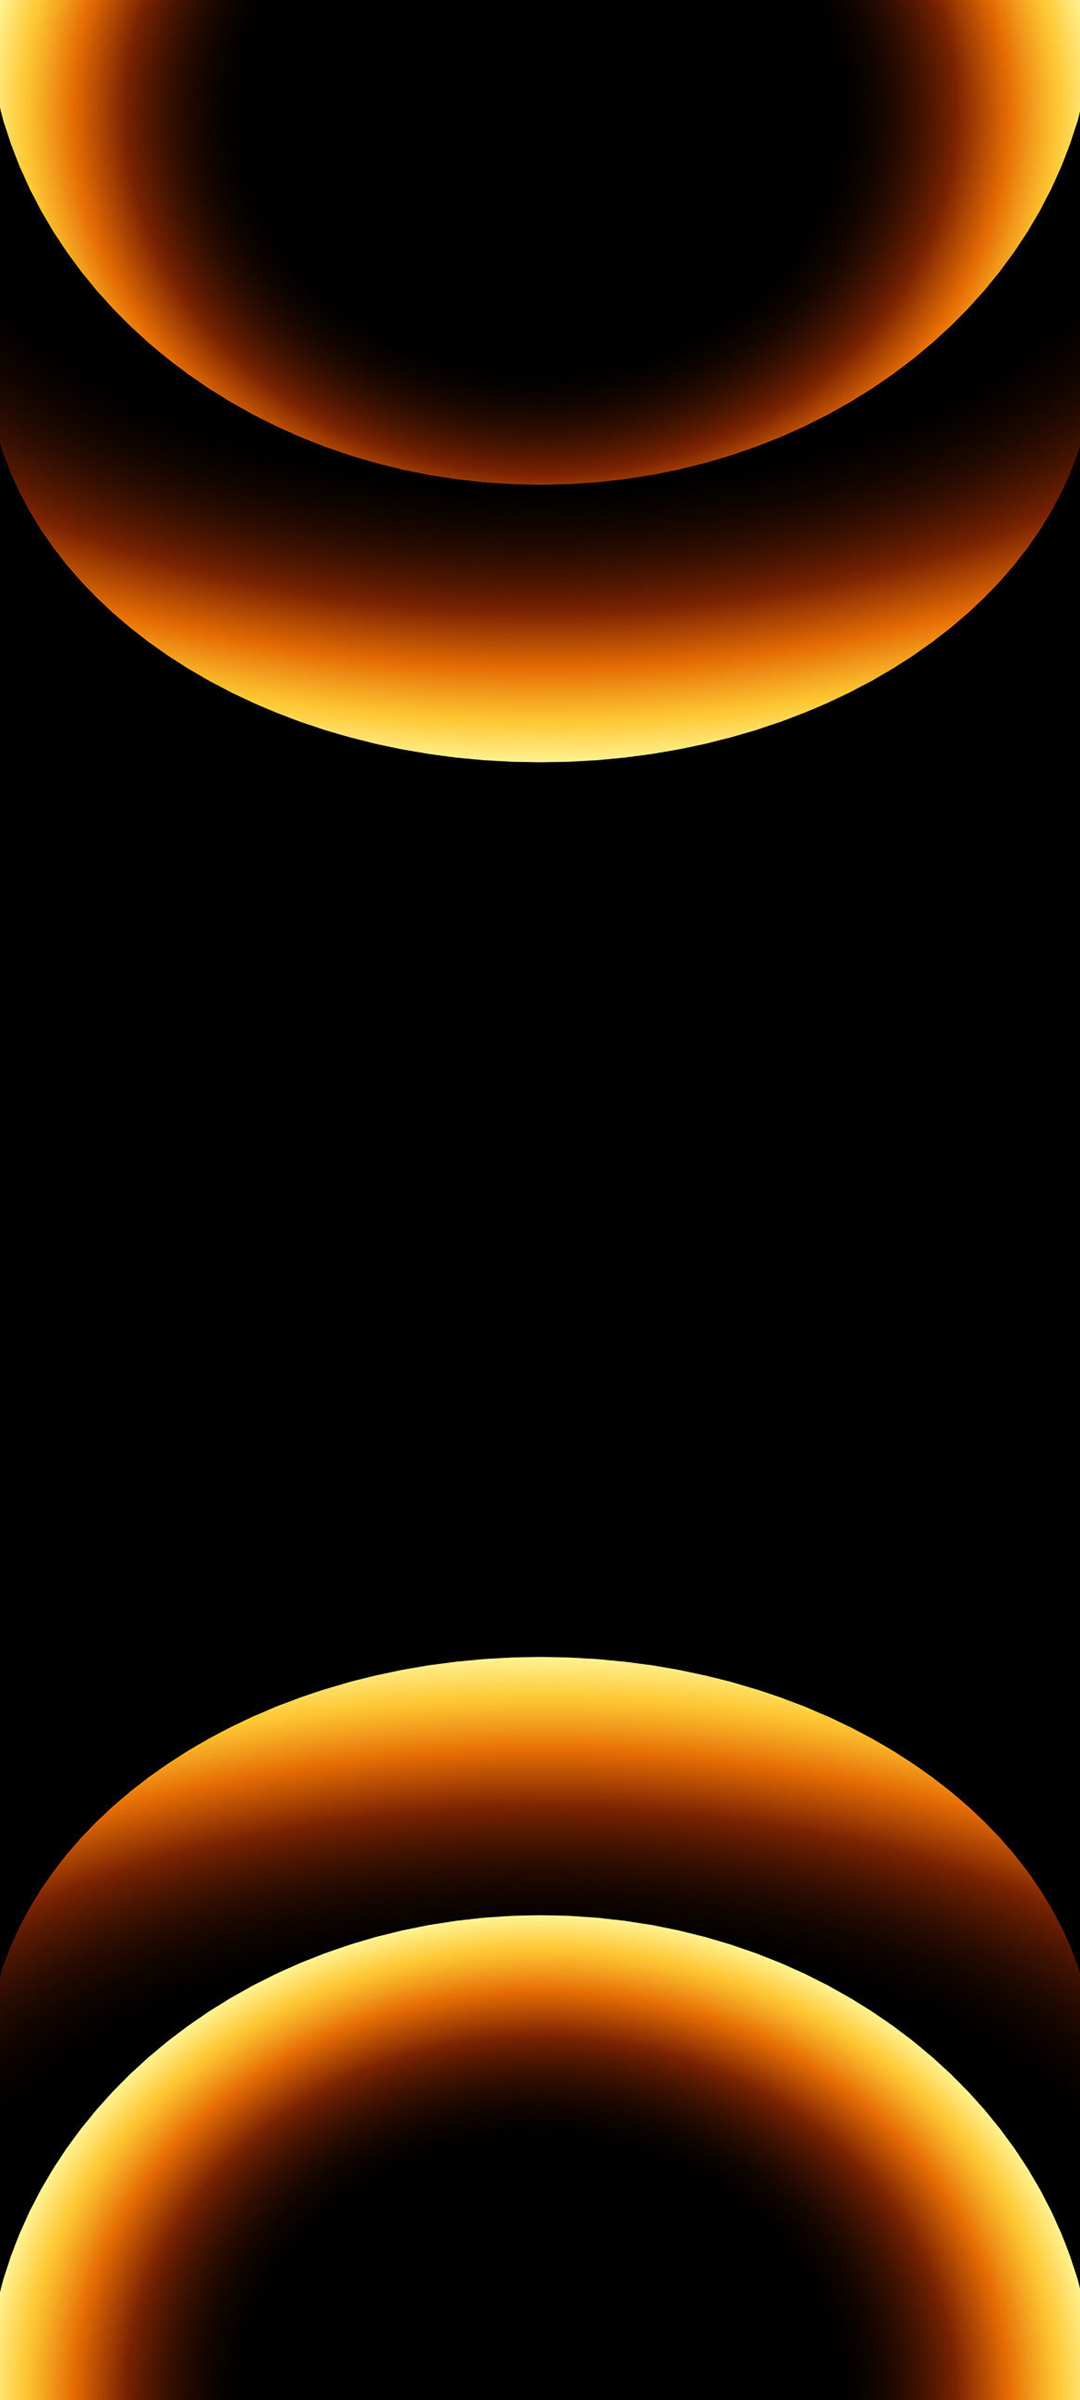 苹果 创意 橙色 黑色背景 手机 壁纸